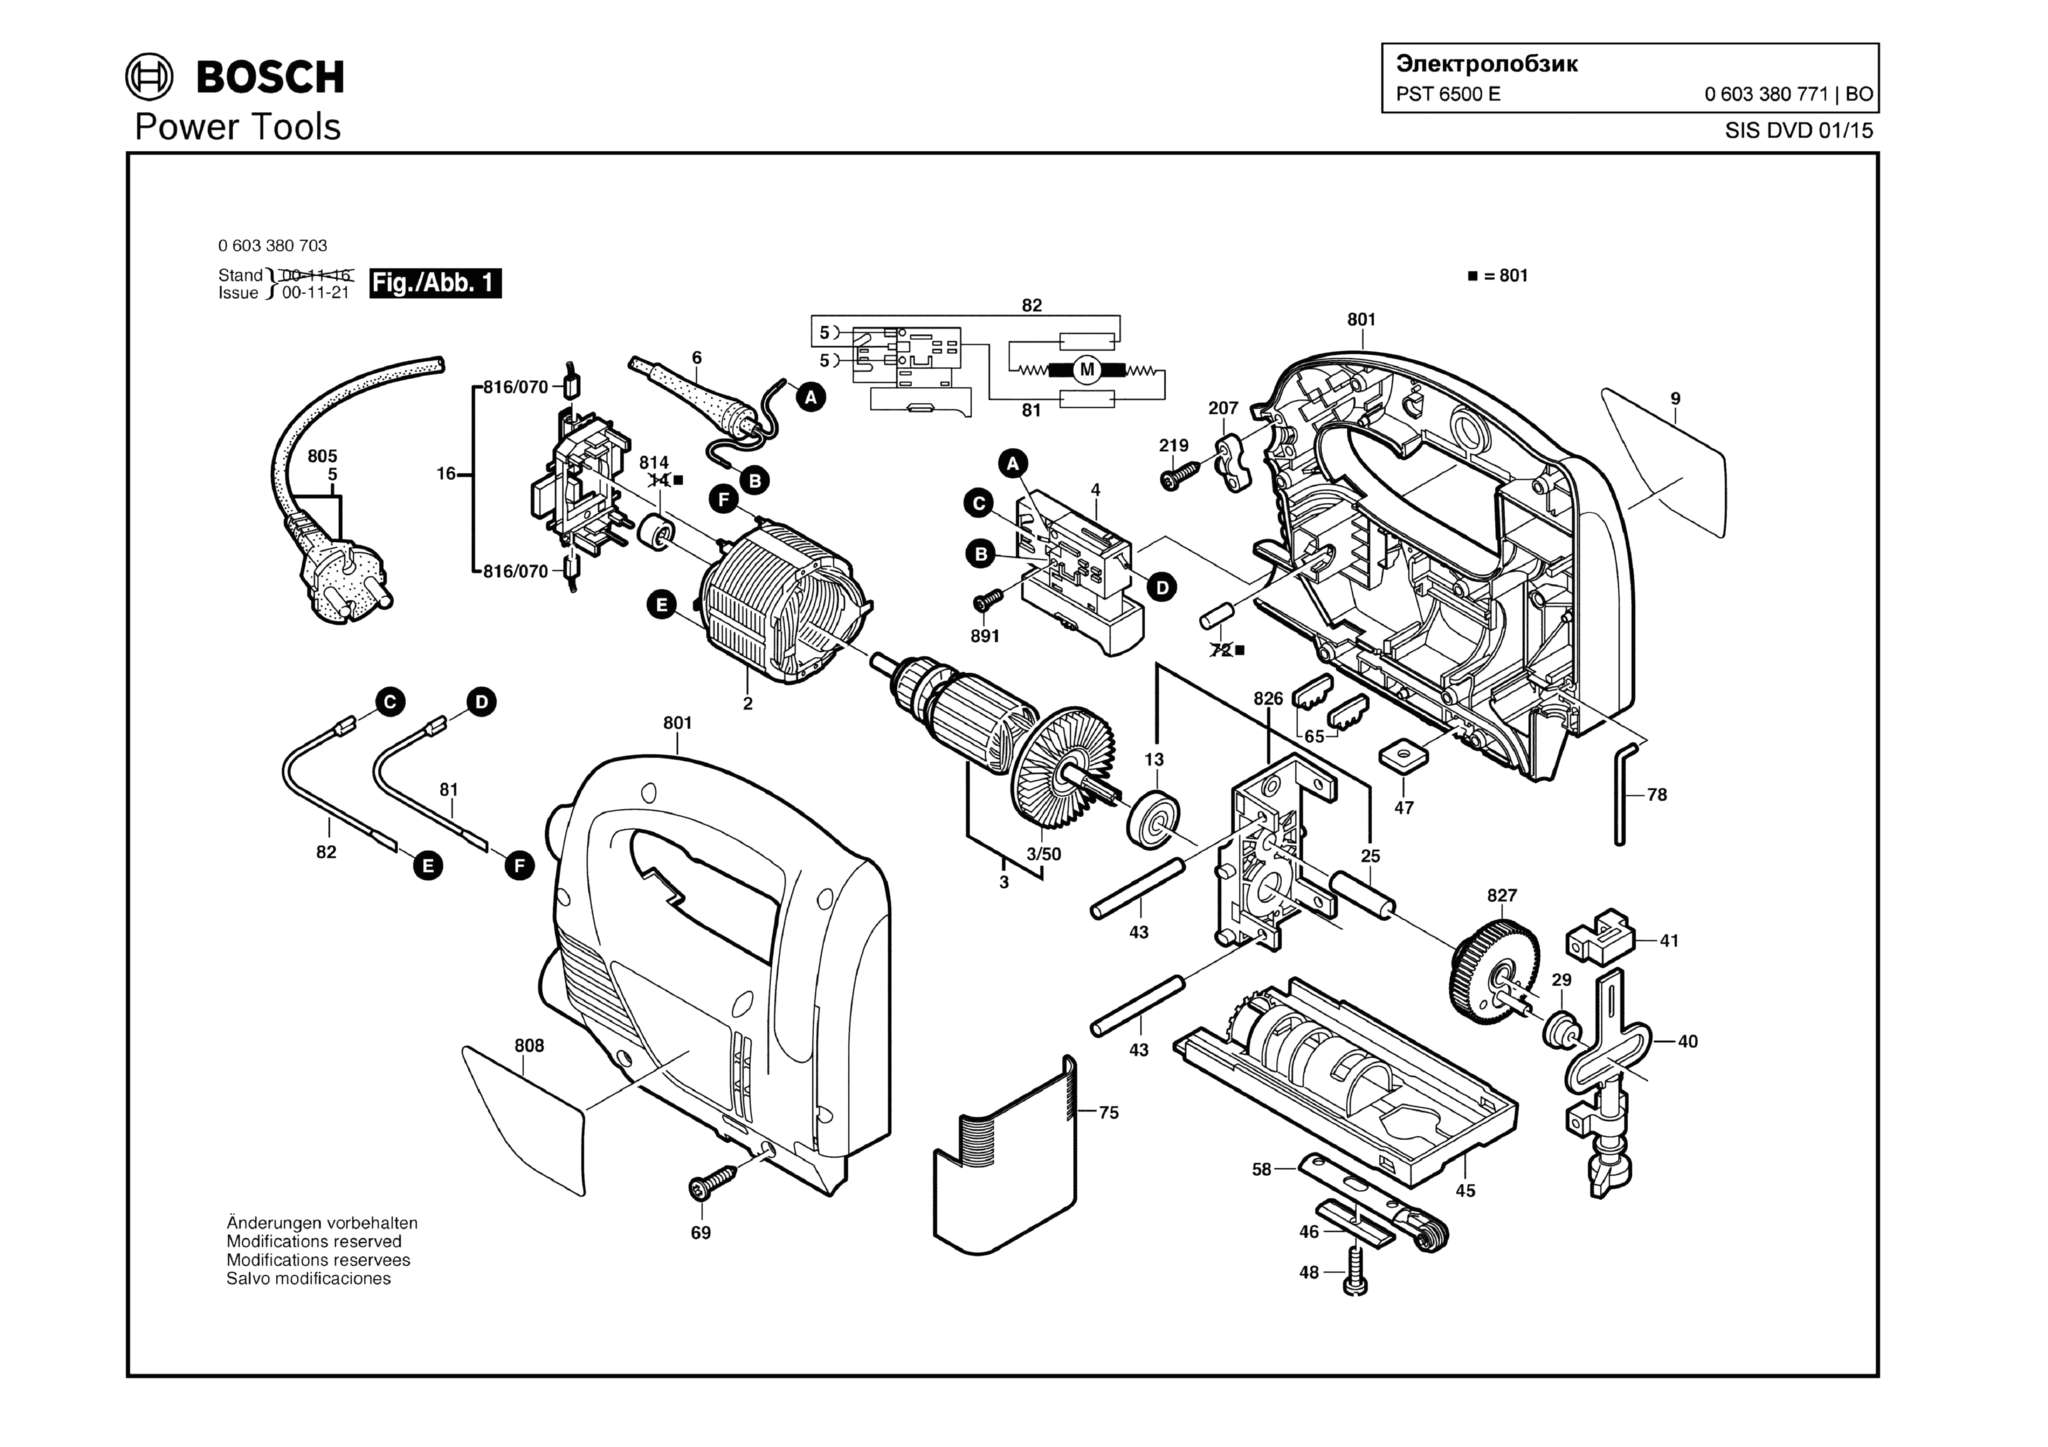 Запчасти, схема и деталировка Bosch PST 6500 E (ТИП 0603380771)